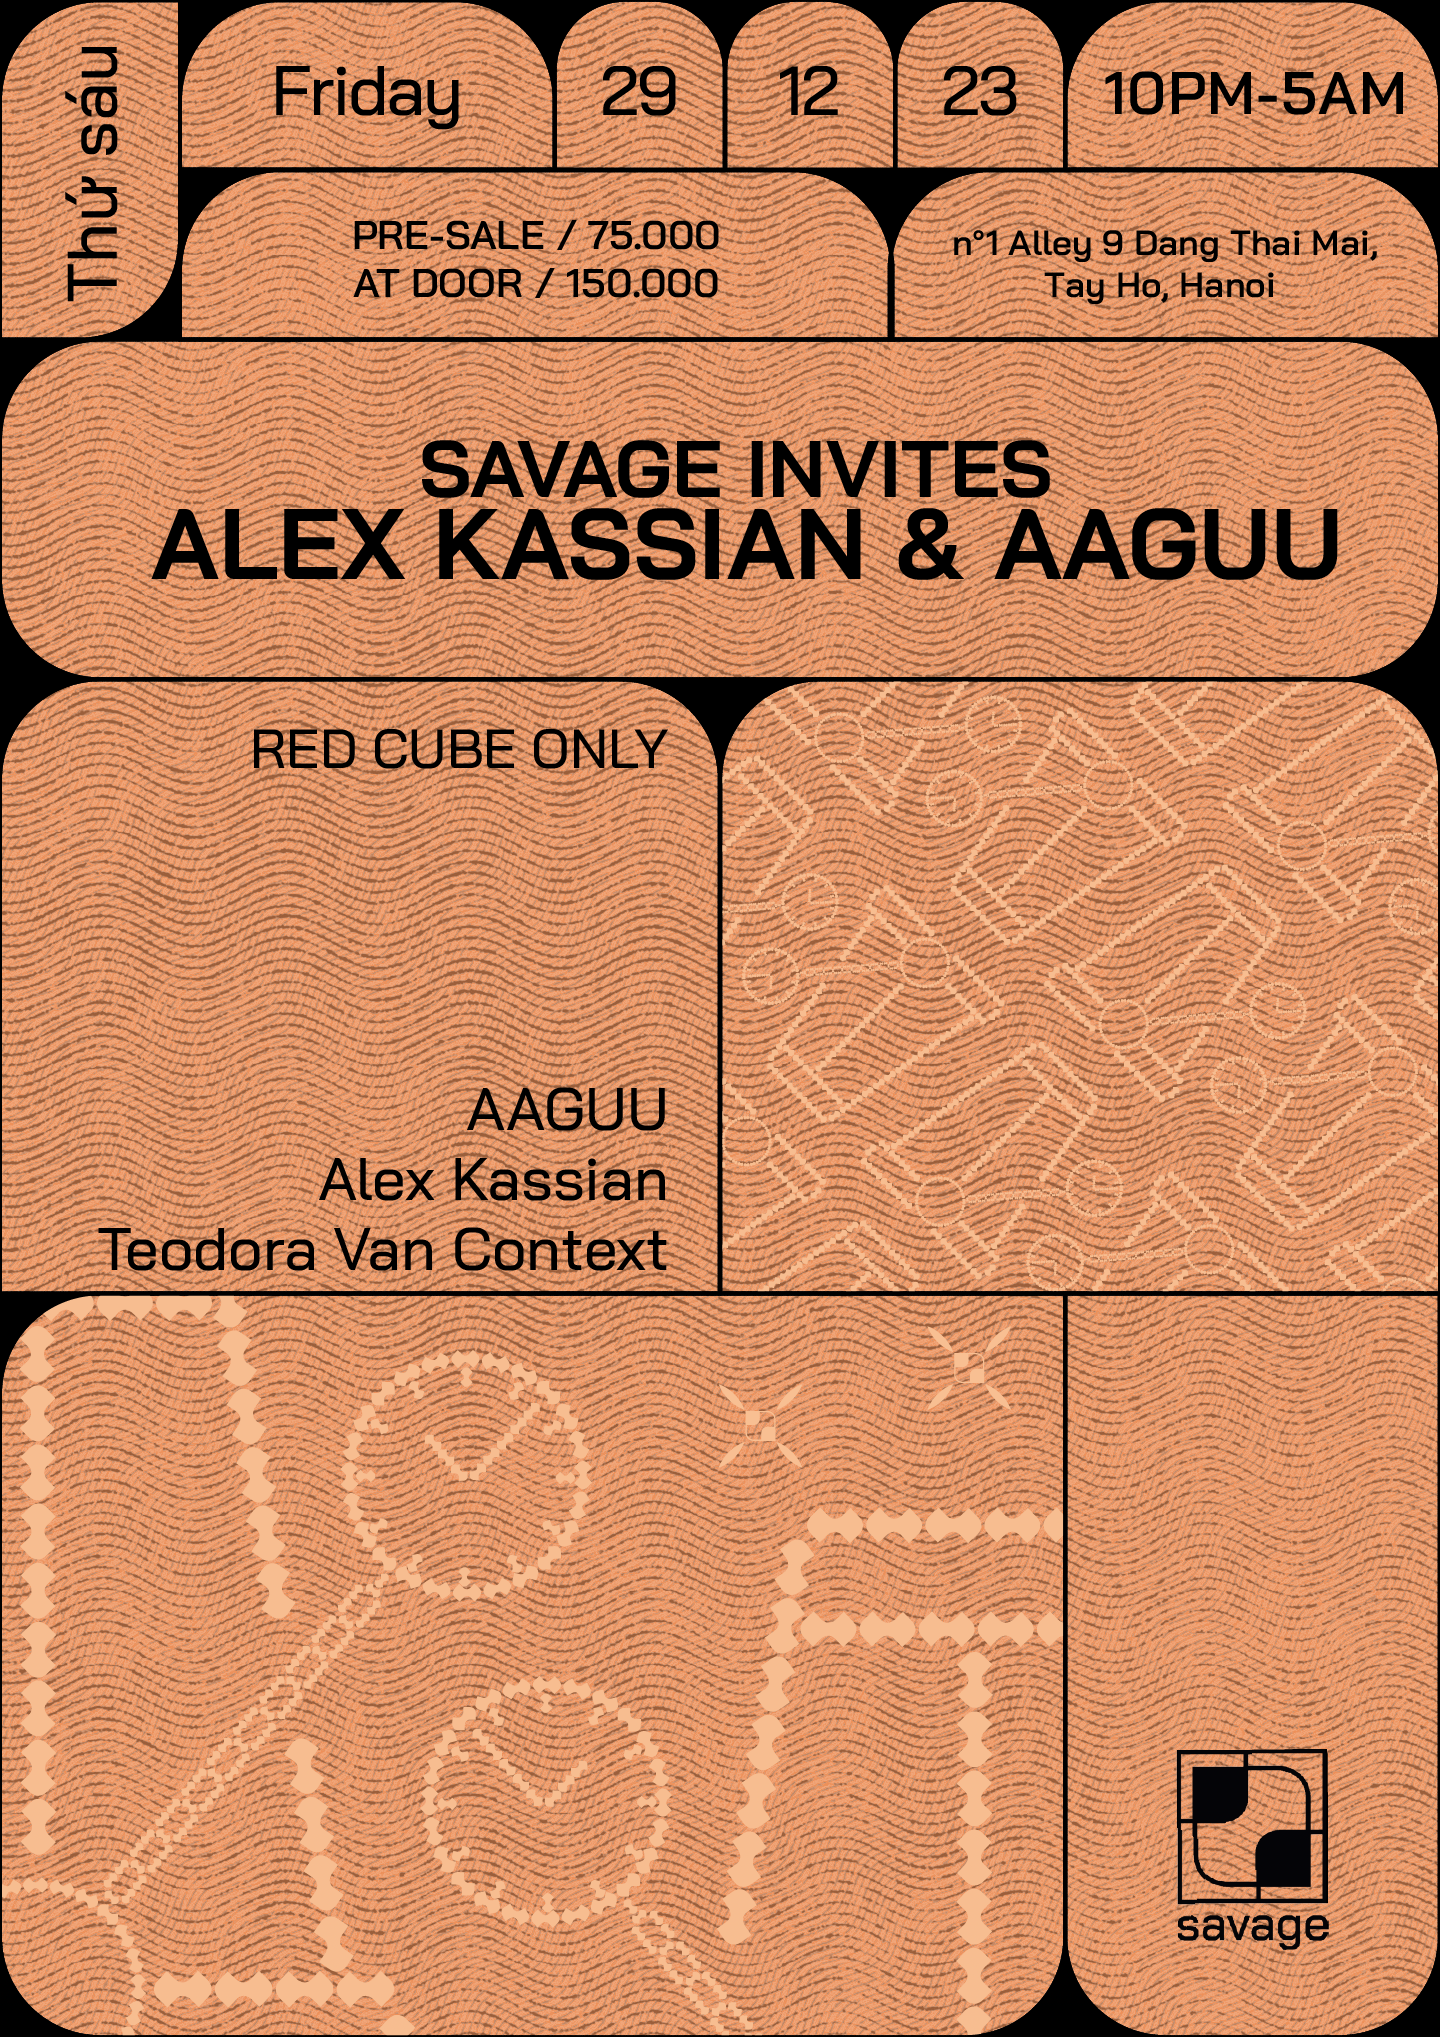 Savage Invites Alex Kassian & AAGUU - Página frontal